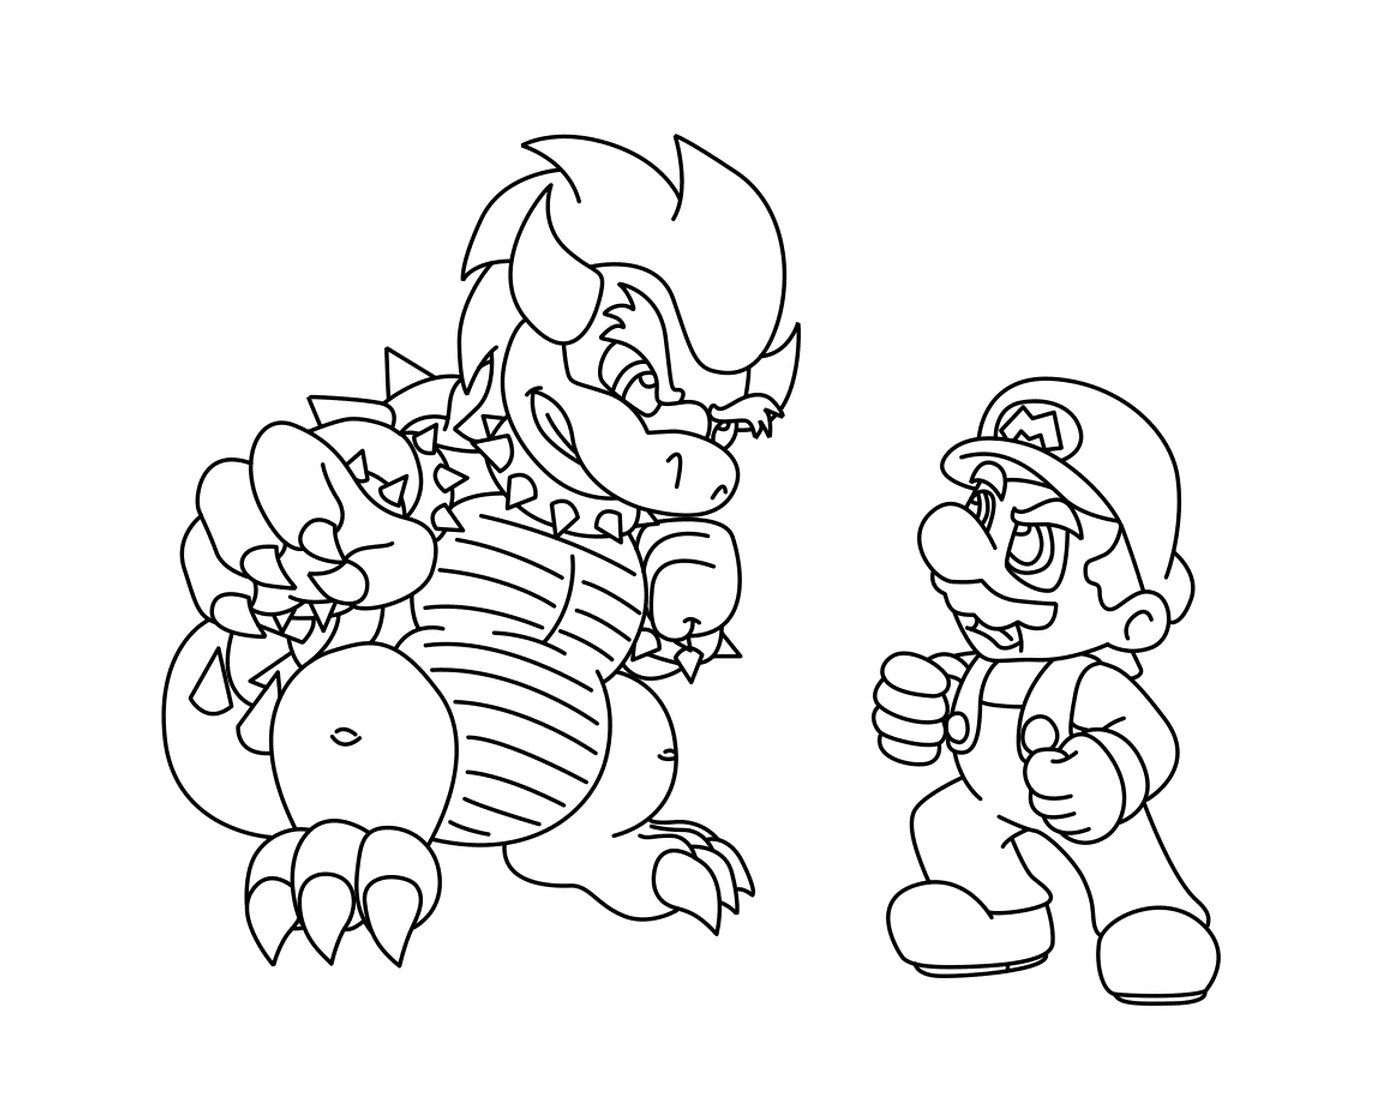  Super Mario Bros versus Bowser 